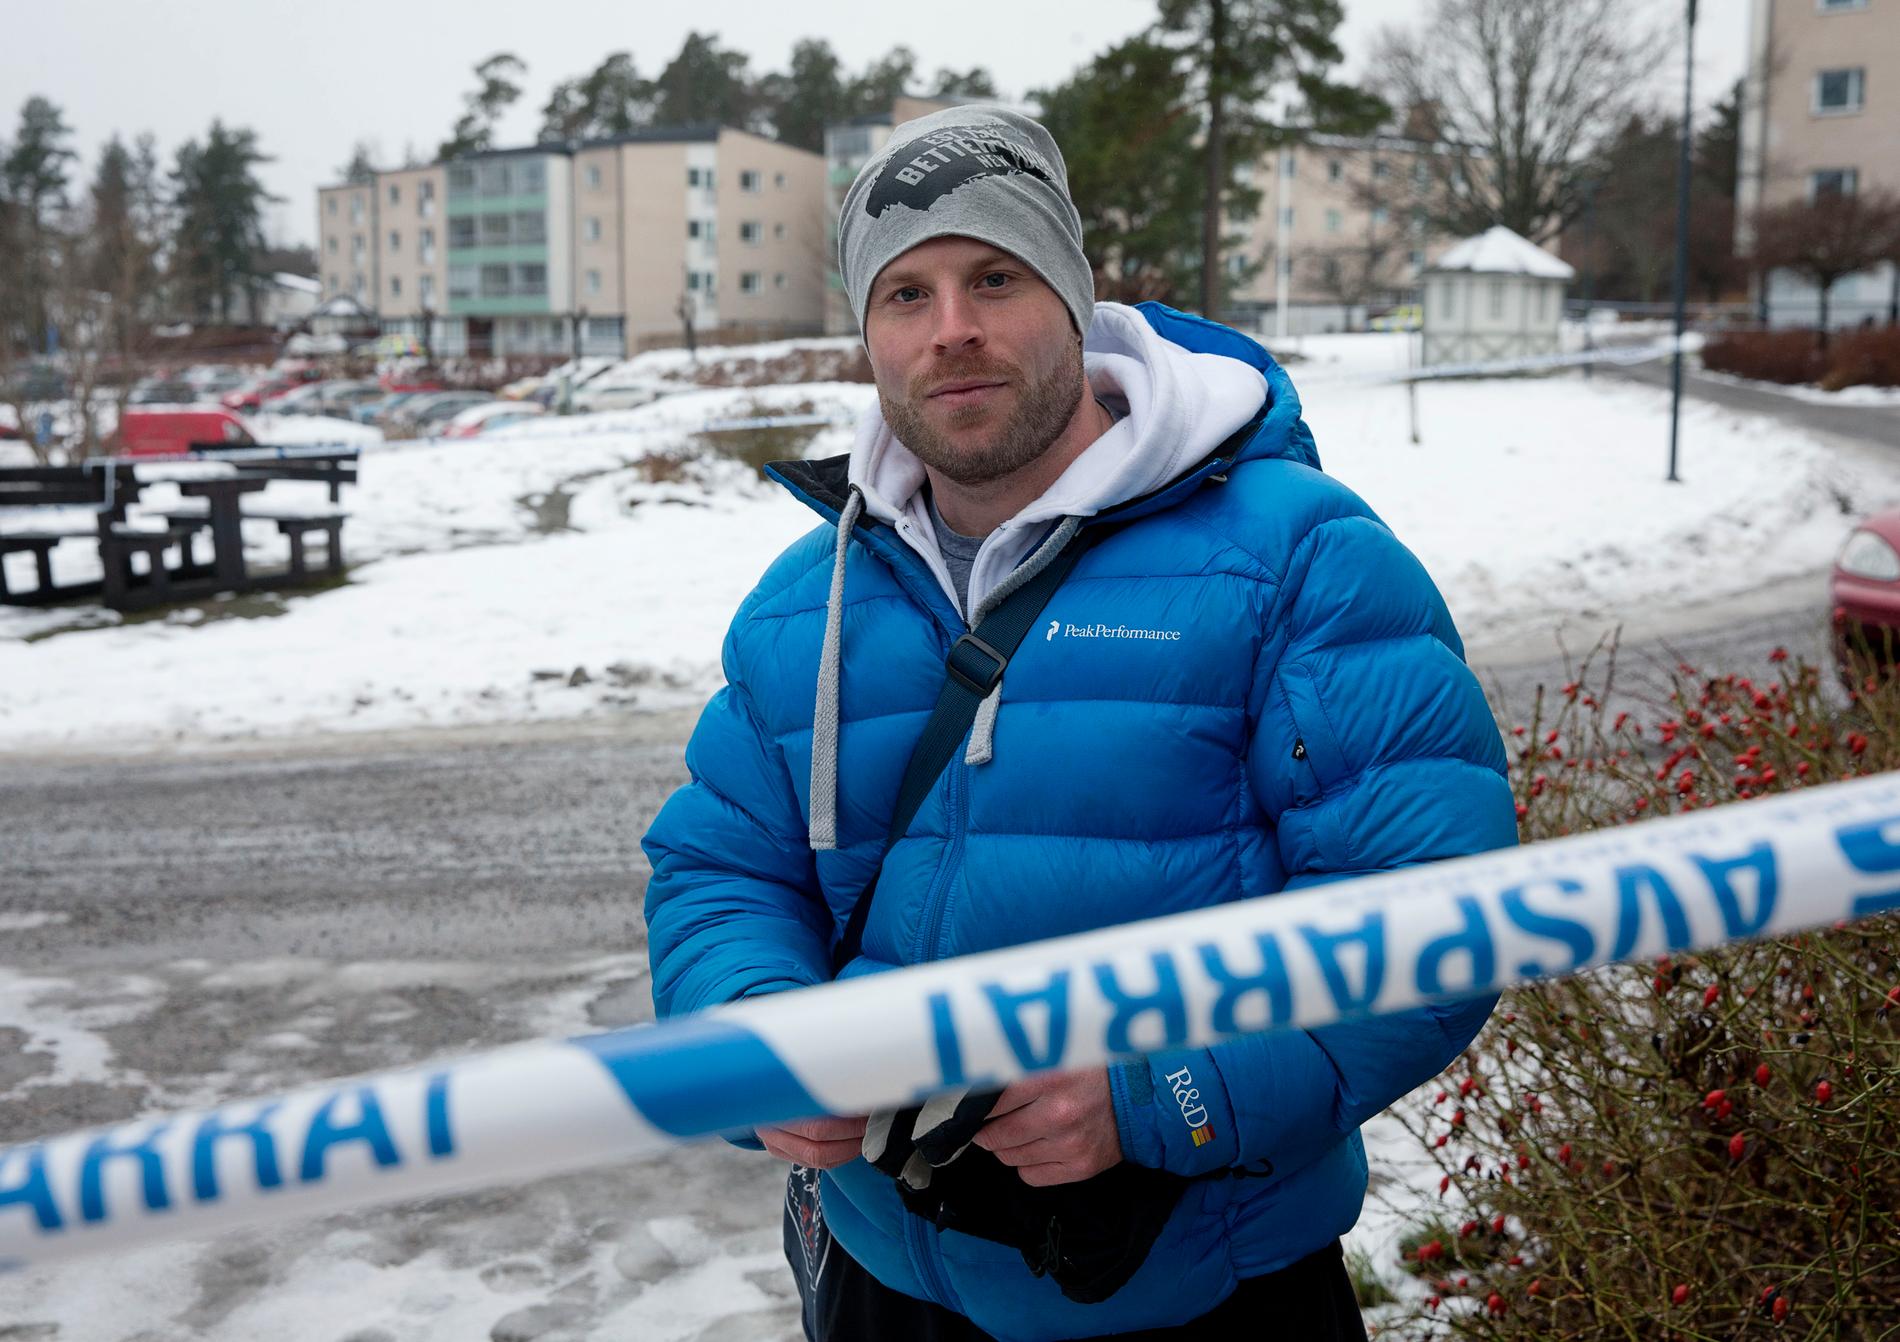 Fredrik Sundberg, 29, passerade han platsen där mannen senare hittades död.
– Det är läskigt att det händer här i lilla Vaxholm, säger han.